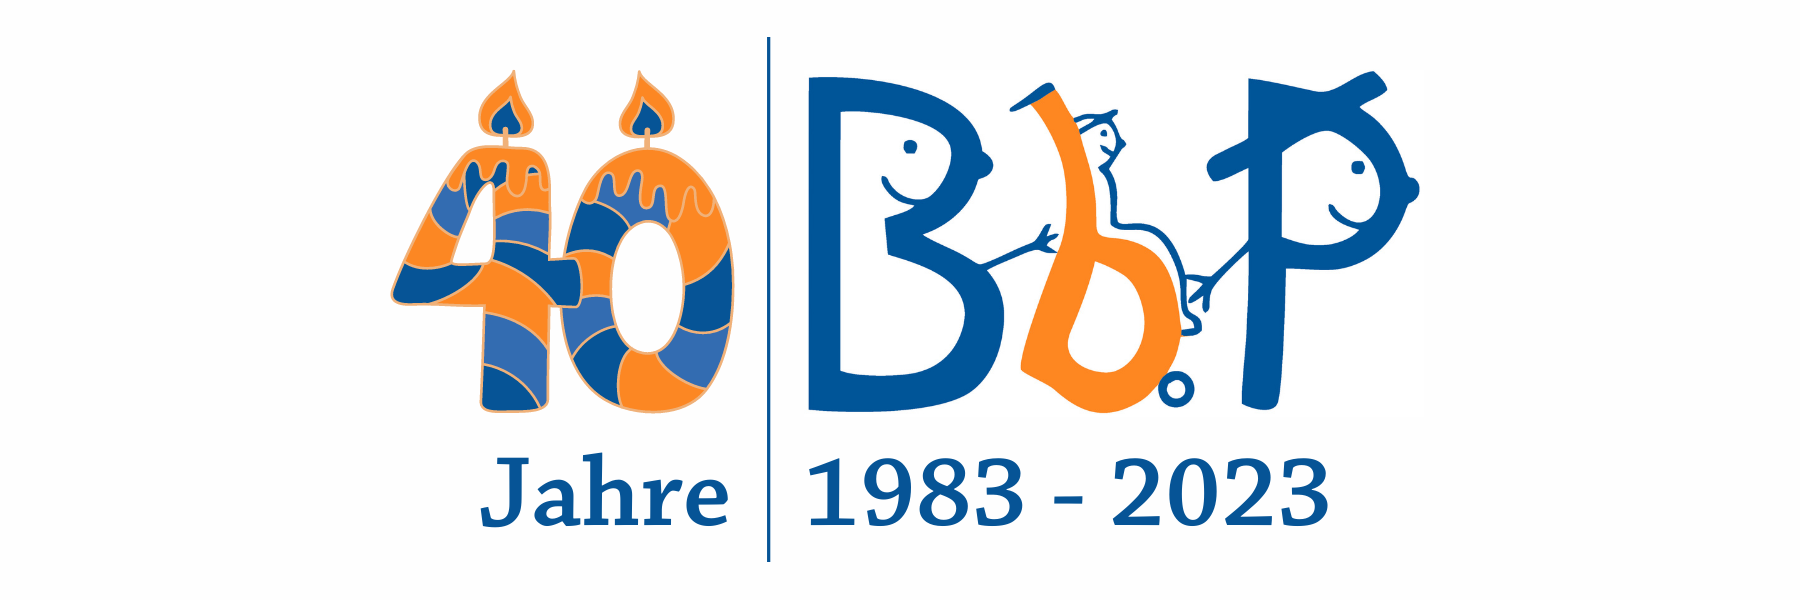 Logo 40 Jahre BbP